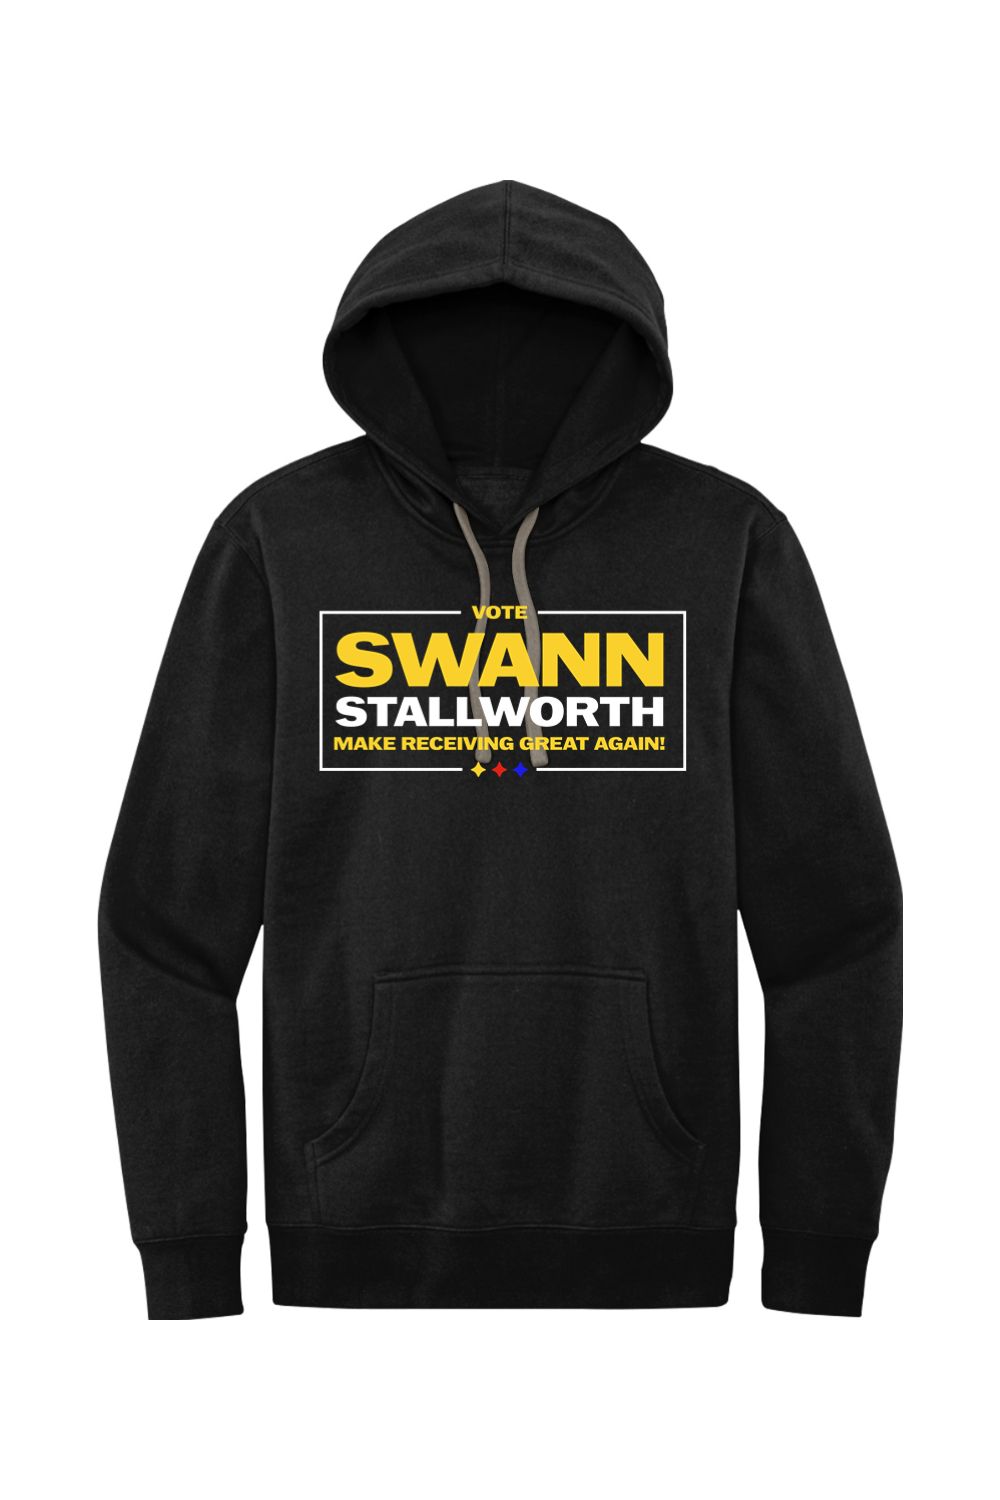 Vote Swann Stallworth - Fleece Hoodie - Yinzylvania